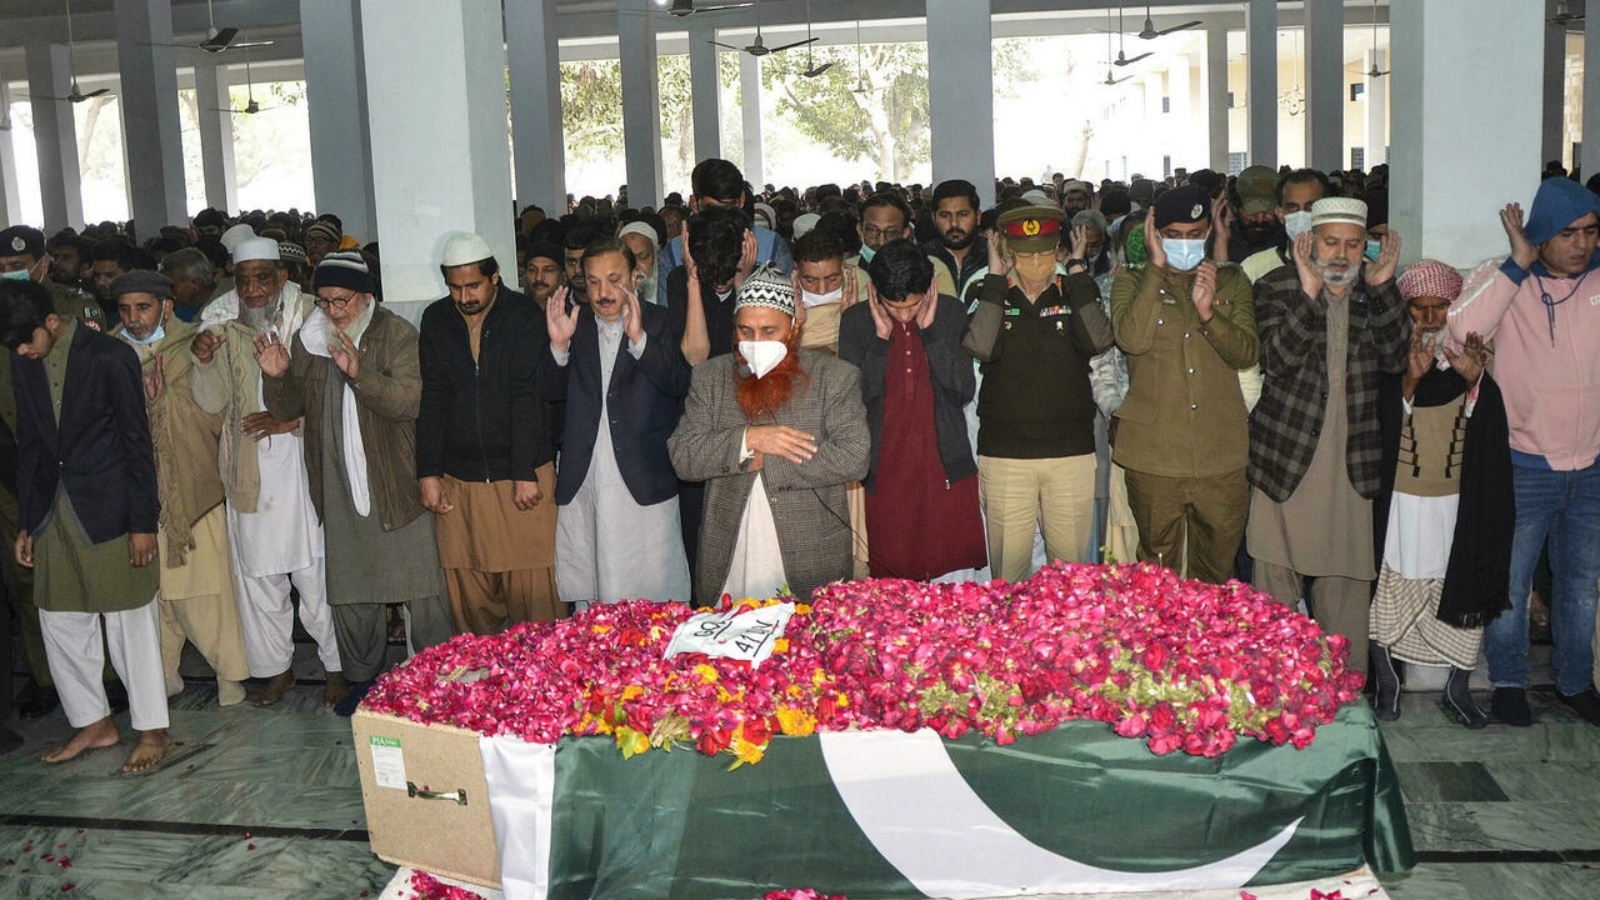 مسؤولون عسكريون وأقارب خلال جنازة أحد العسكريين الذين قتلوا في معارك مع انفصاليين في إقليم بلوشستان جنوب باكستان